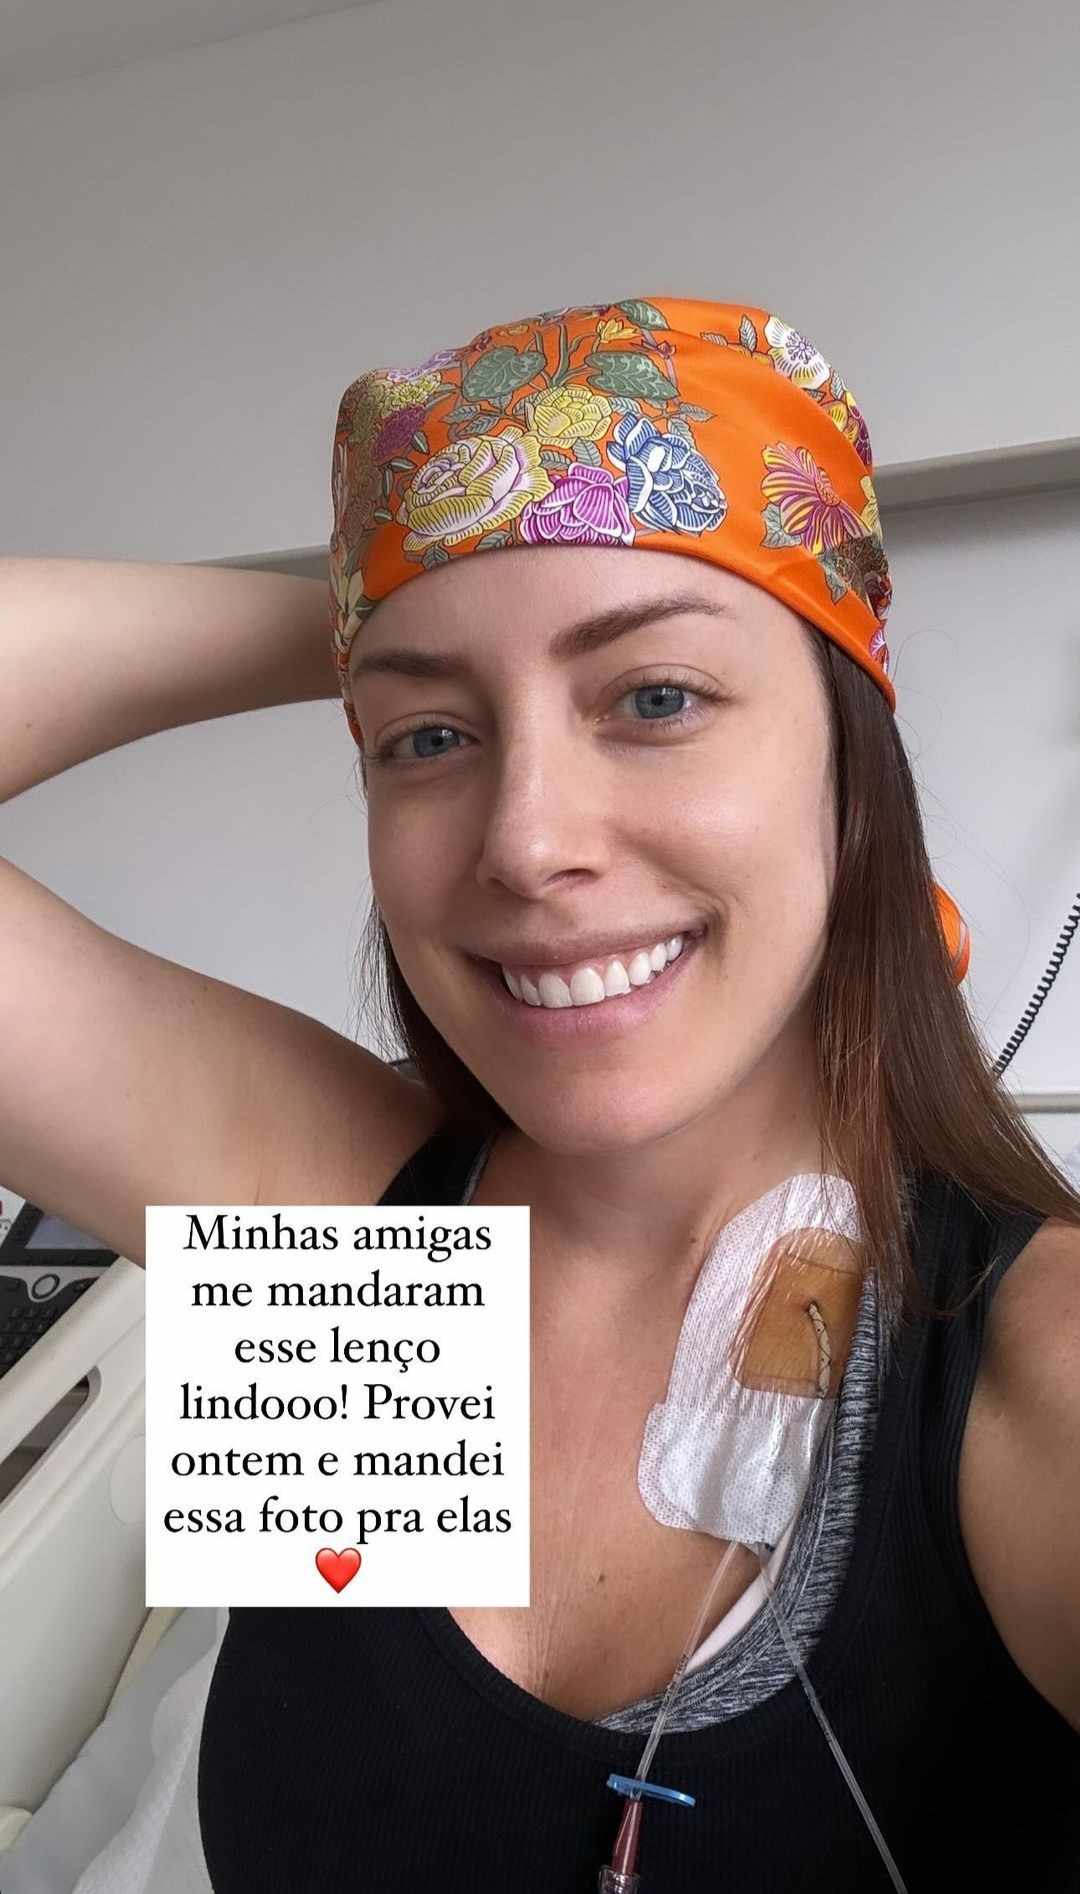 Em tratamento contra leucemia, Fabiana Justus mostra queda de cabelo